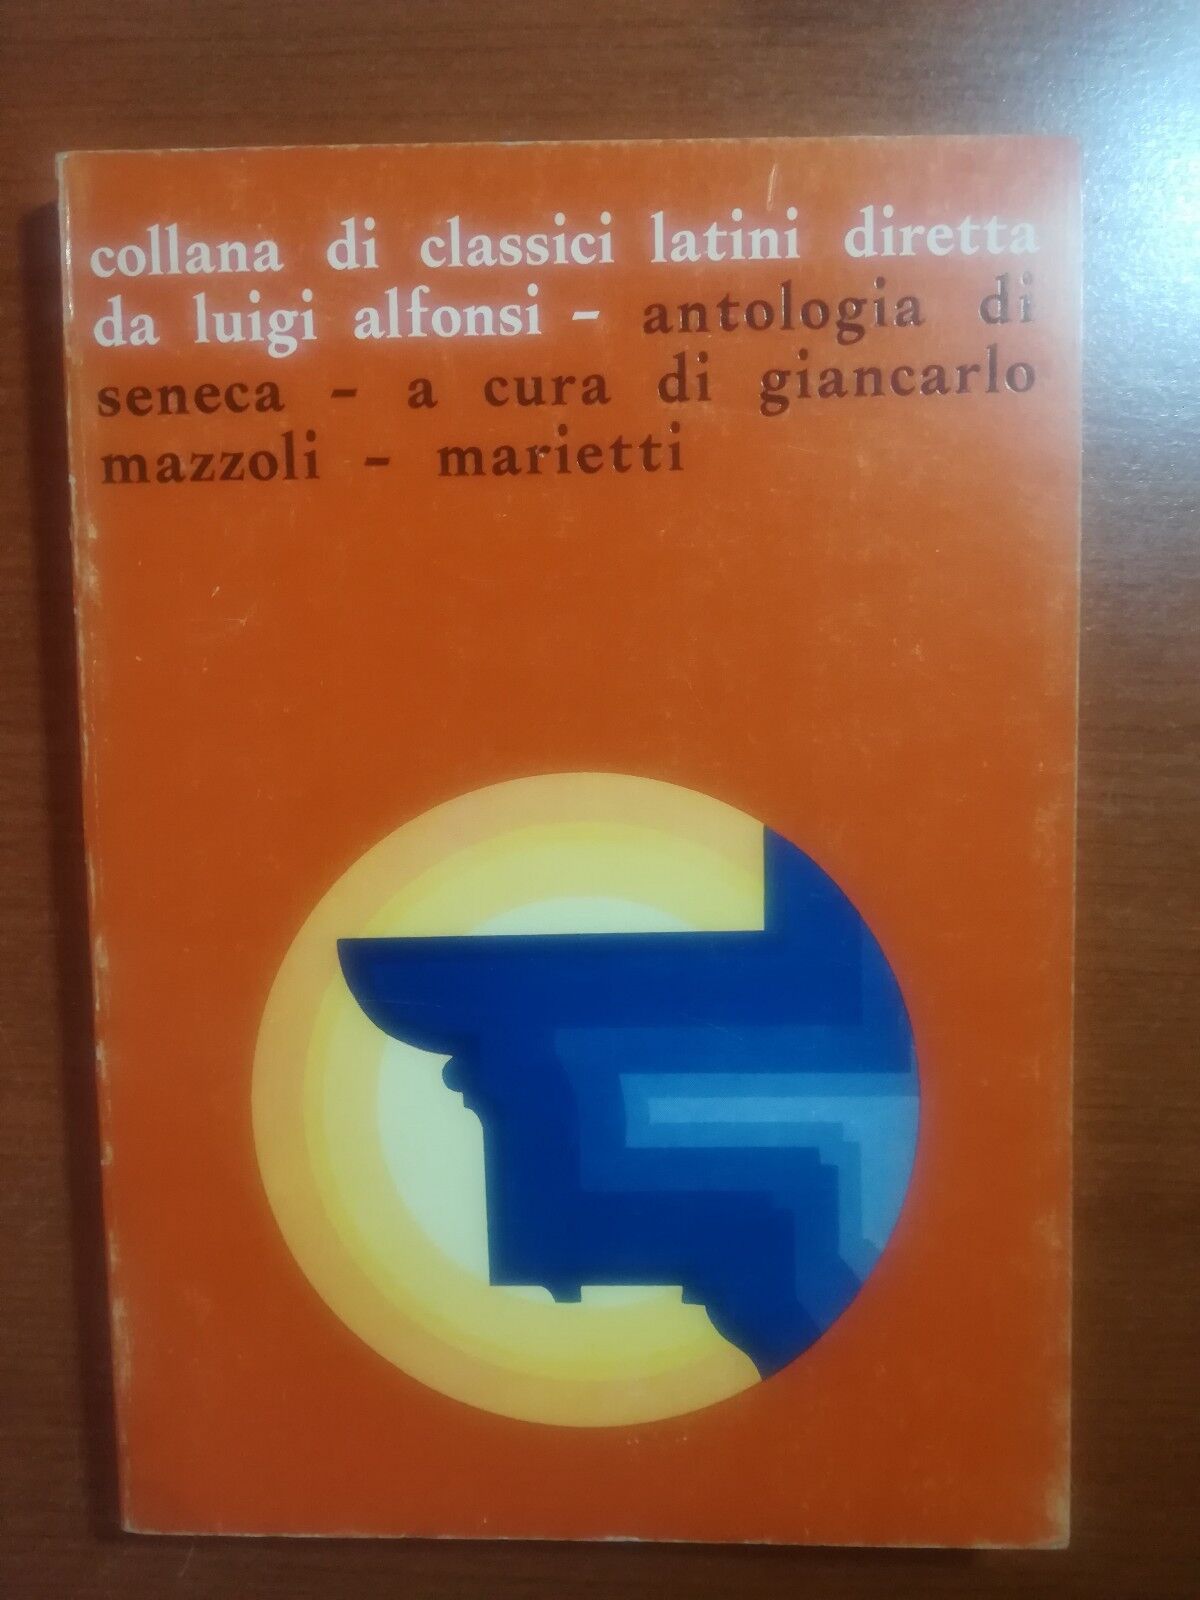 Antologia di Seneca - Mazzoli Giancarlo - Marietti - 1972 - M